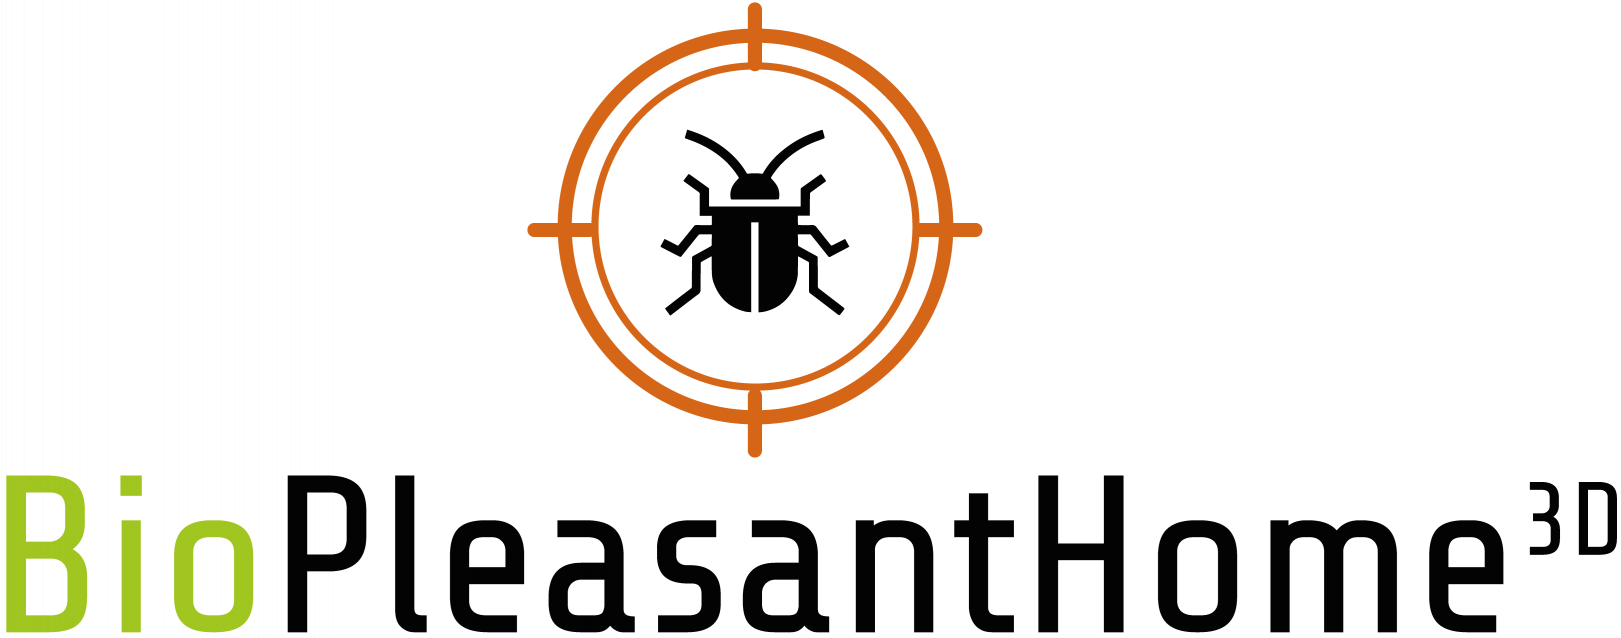 artisan logo